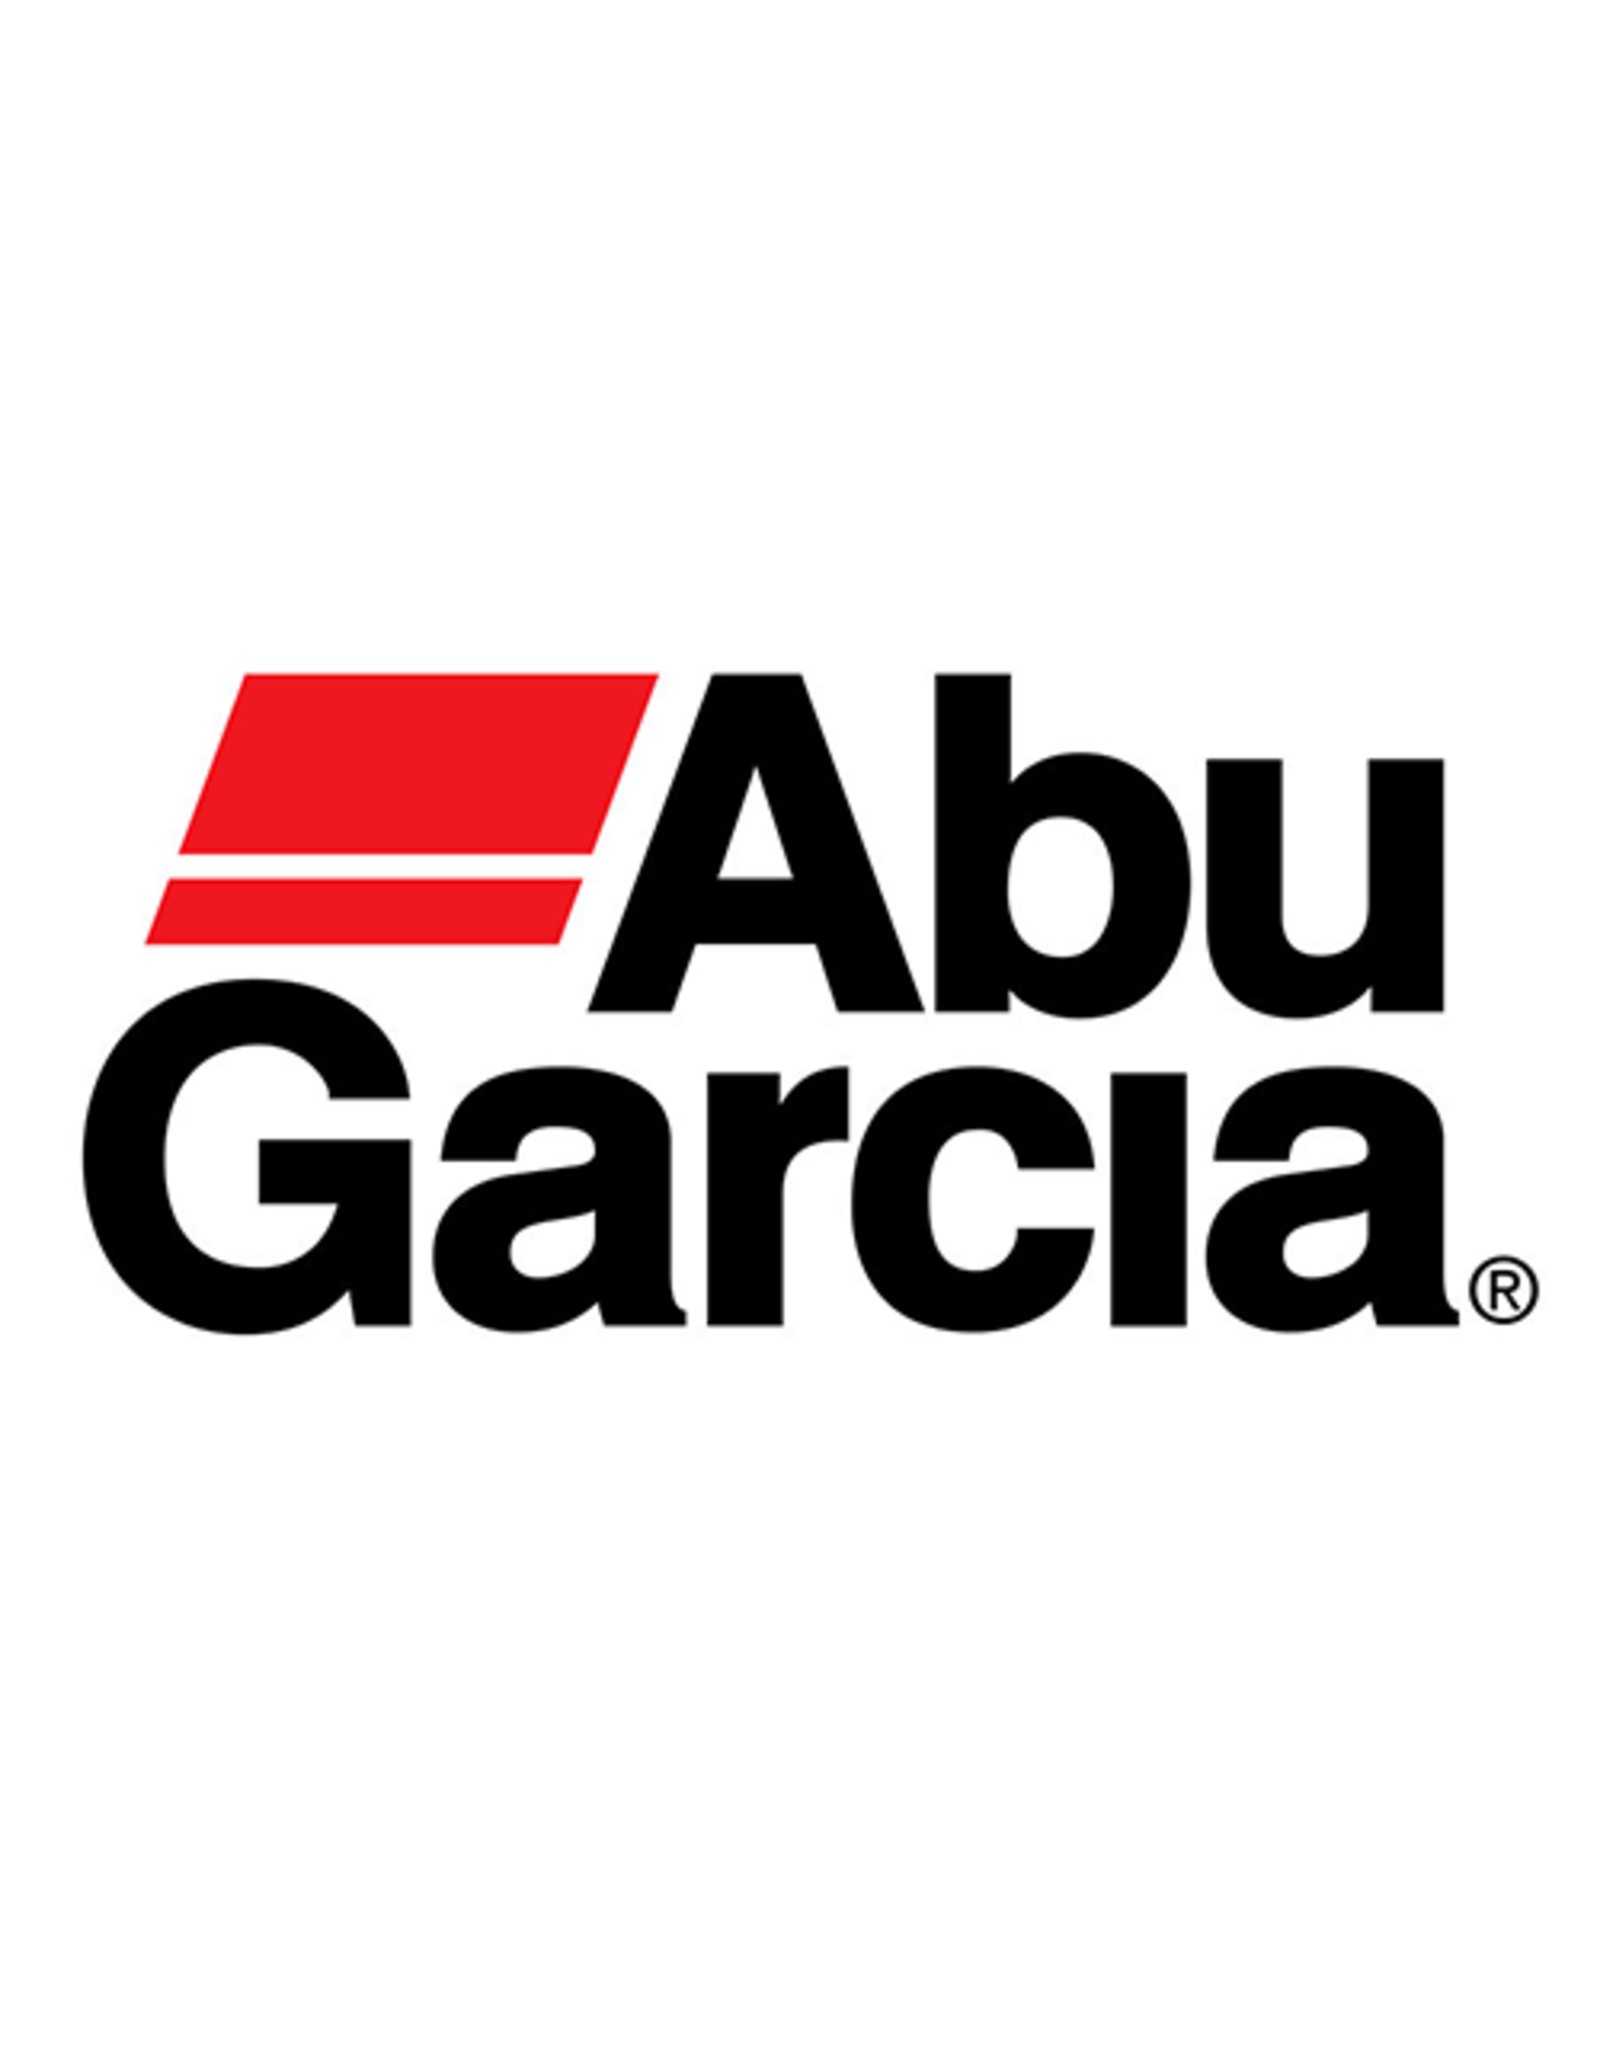 Abu Garcia 1125834  BRAKE WEIGHT